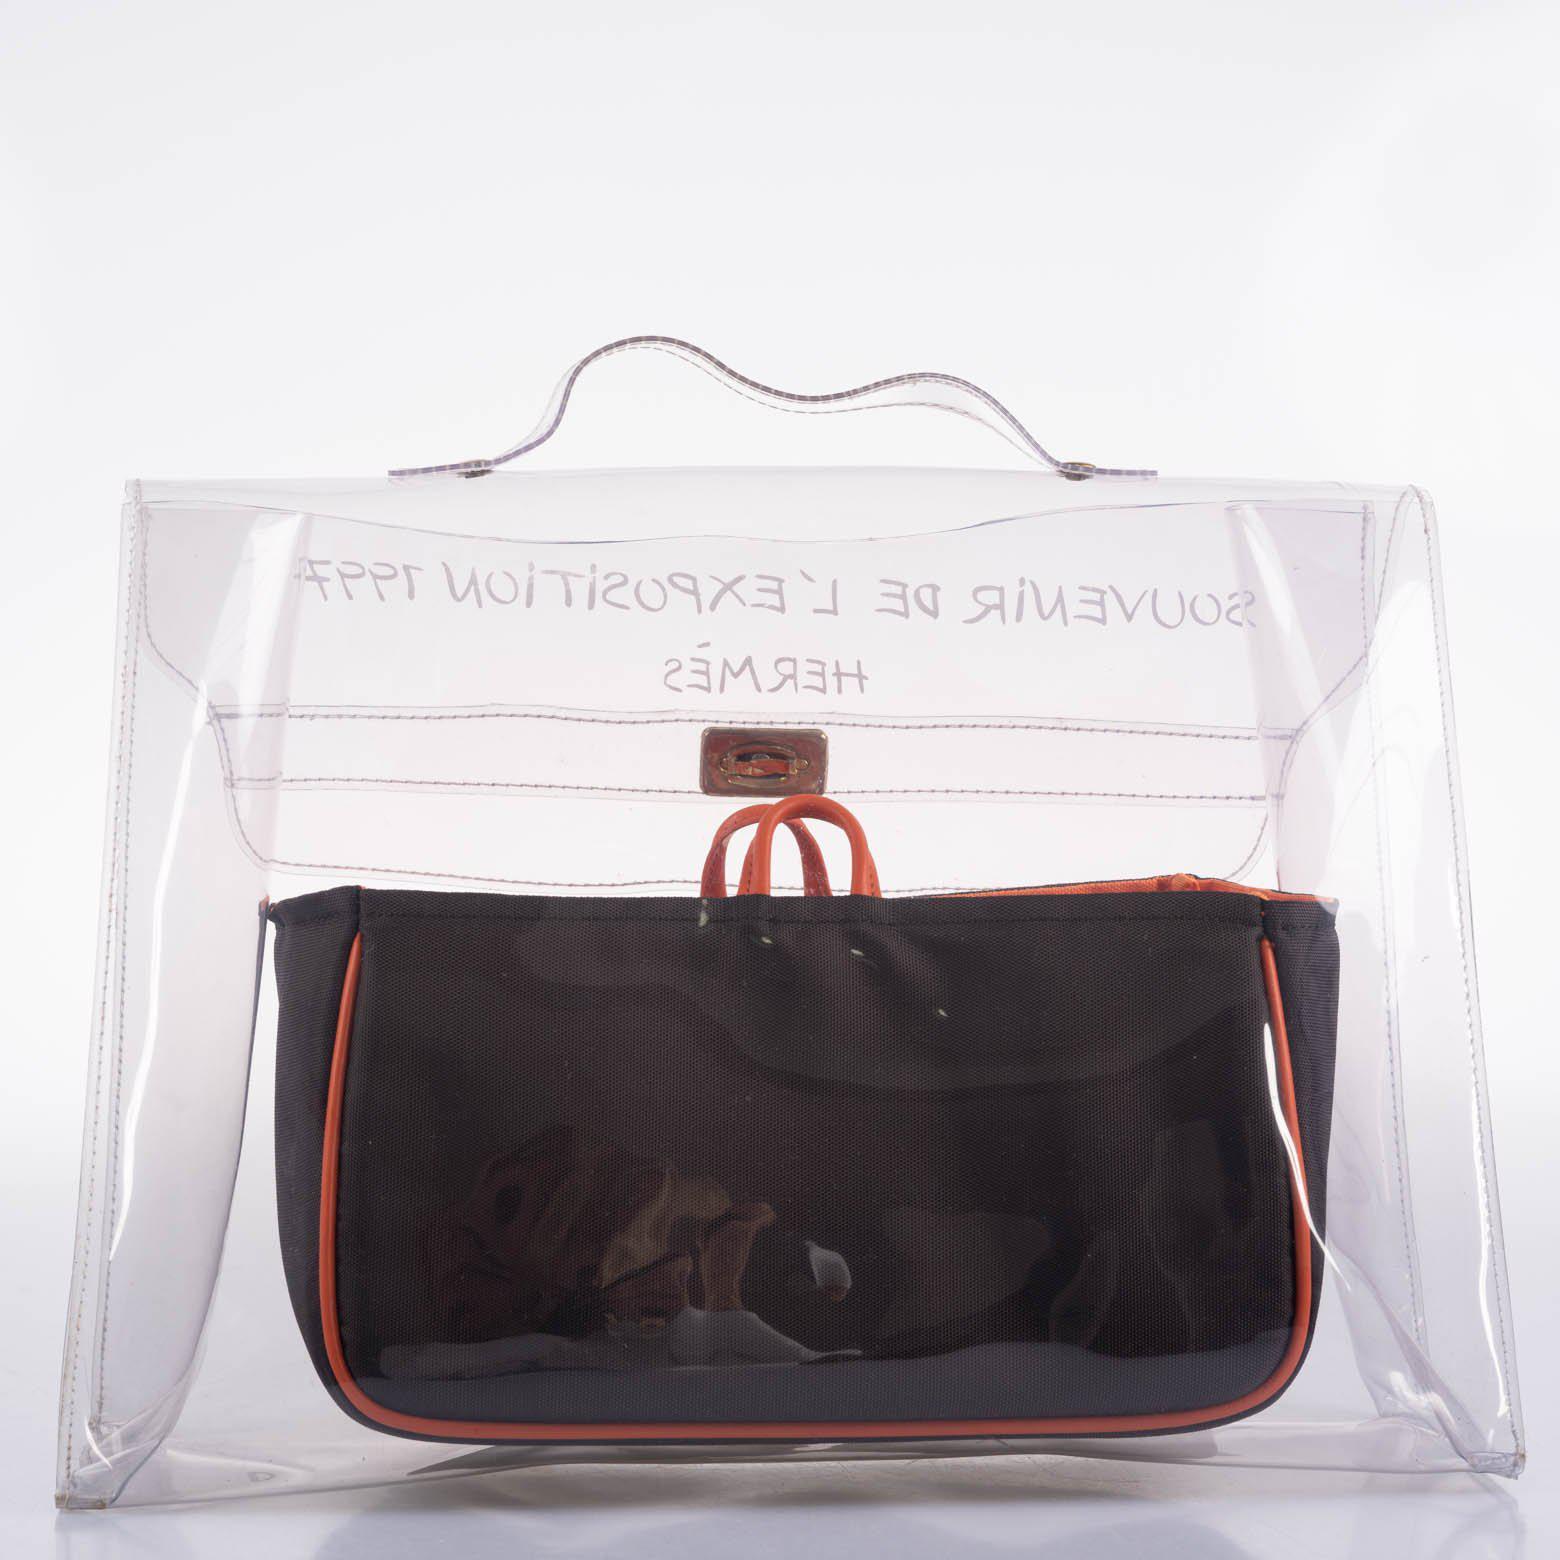 Hermès Kelly 40 Transparent Vinyl Beach Bag Souvenir De L’Exposition